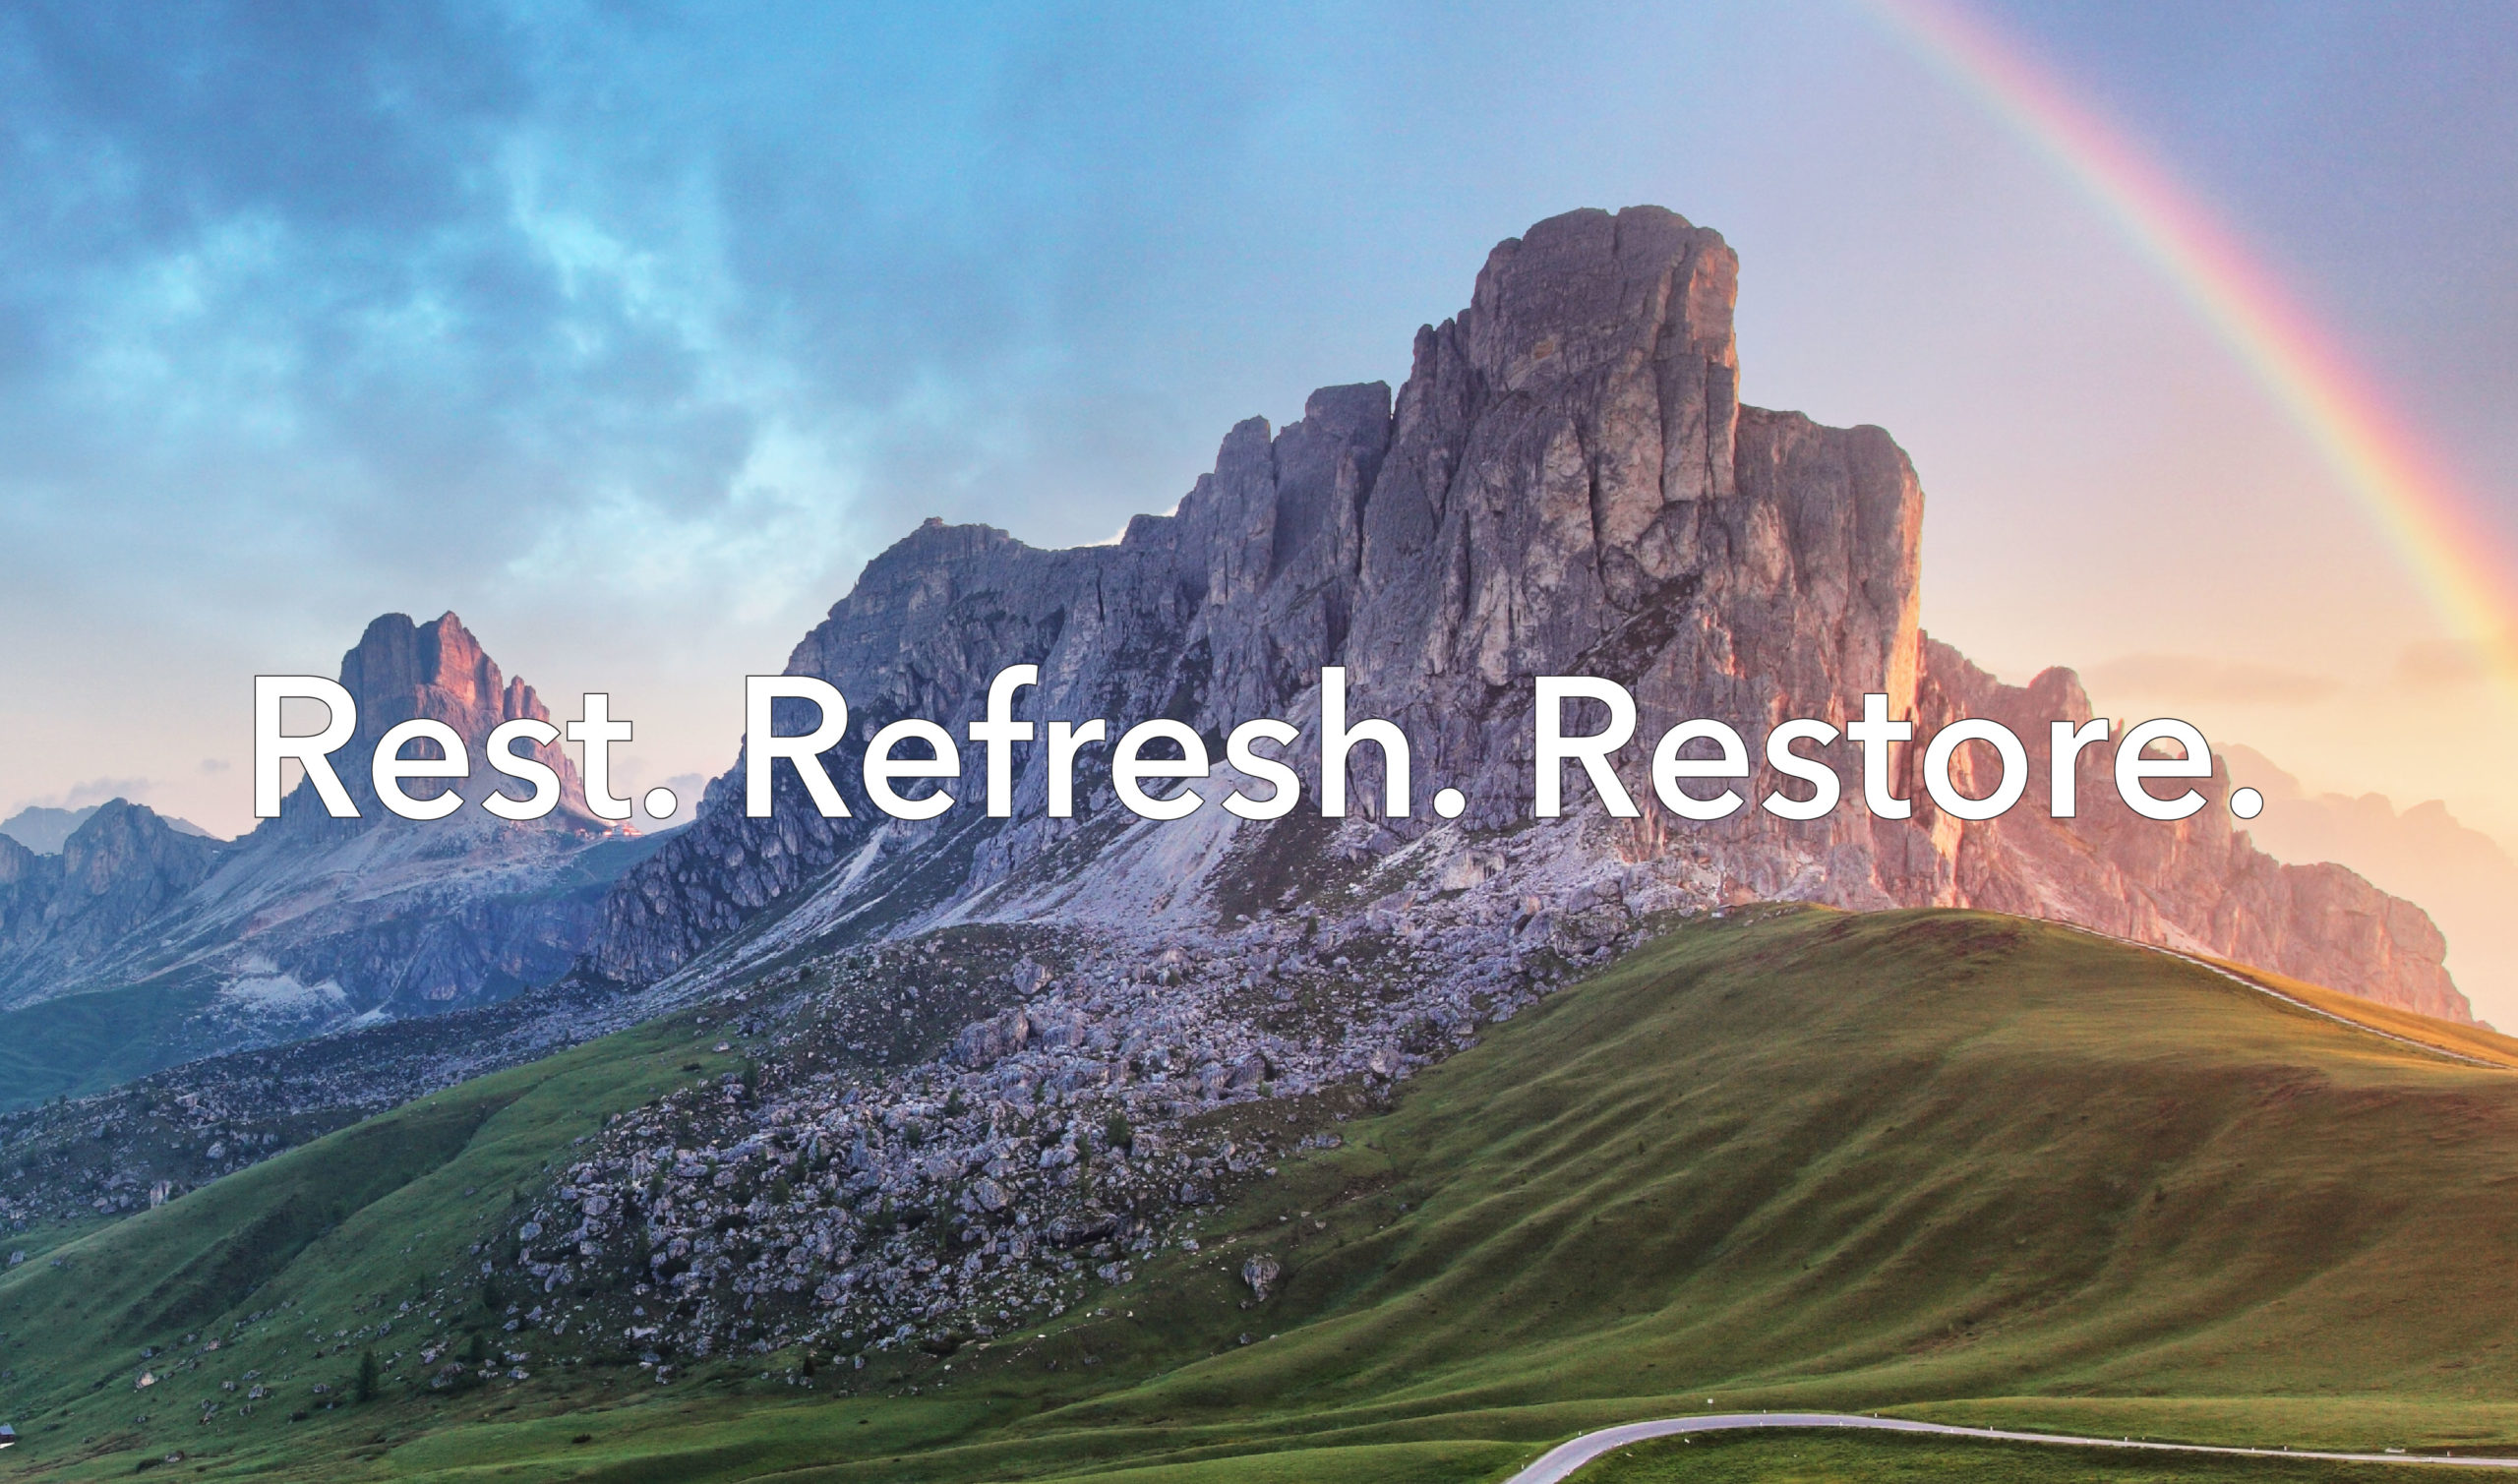 Rest. Refresh. Restore.